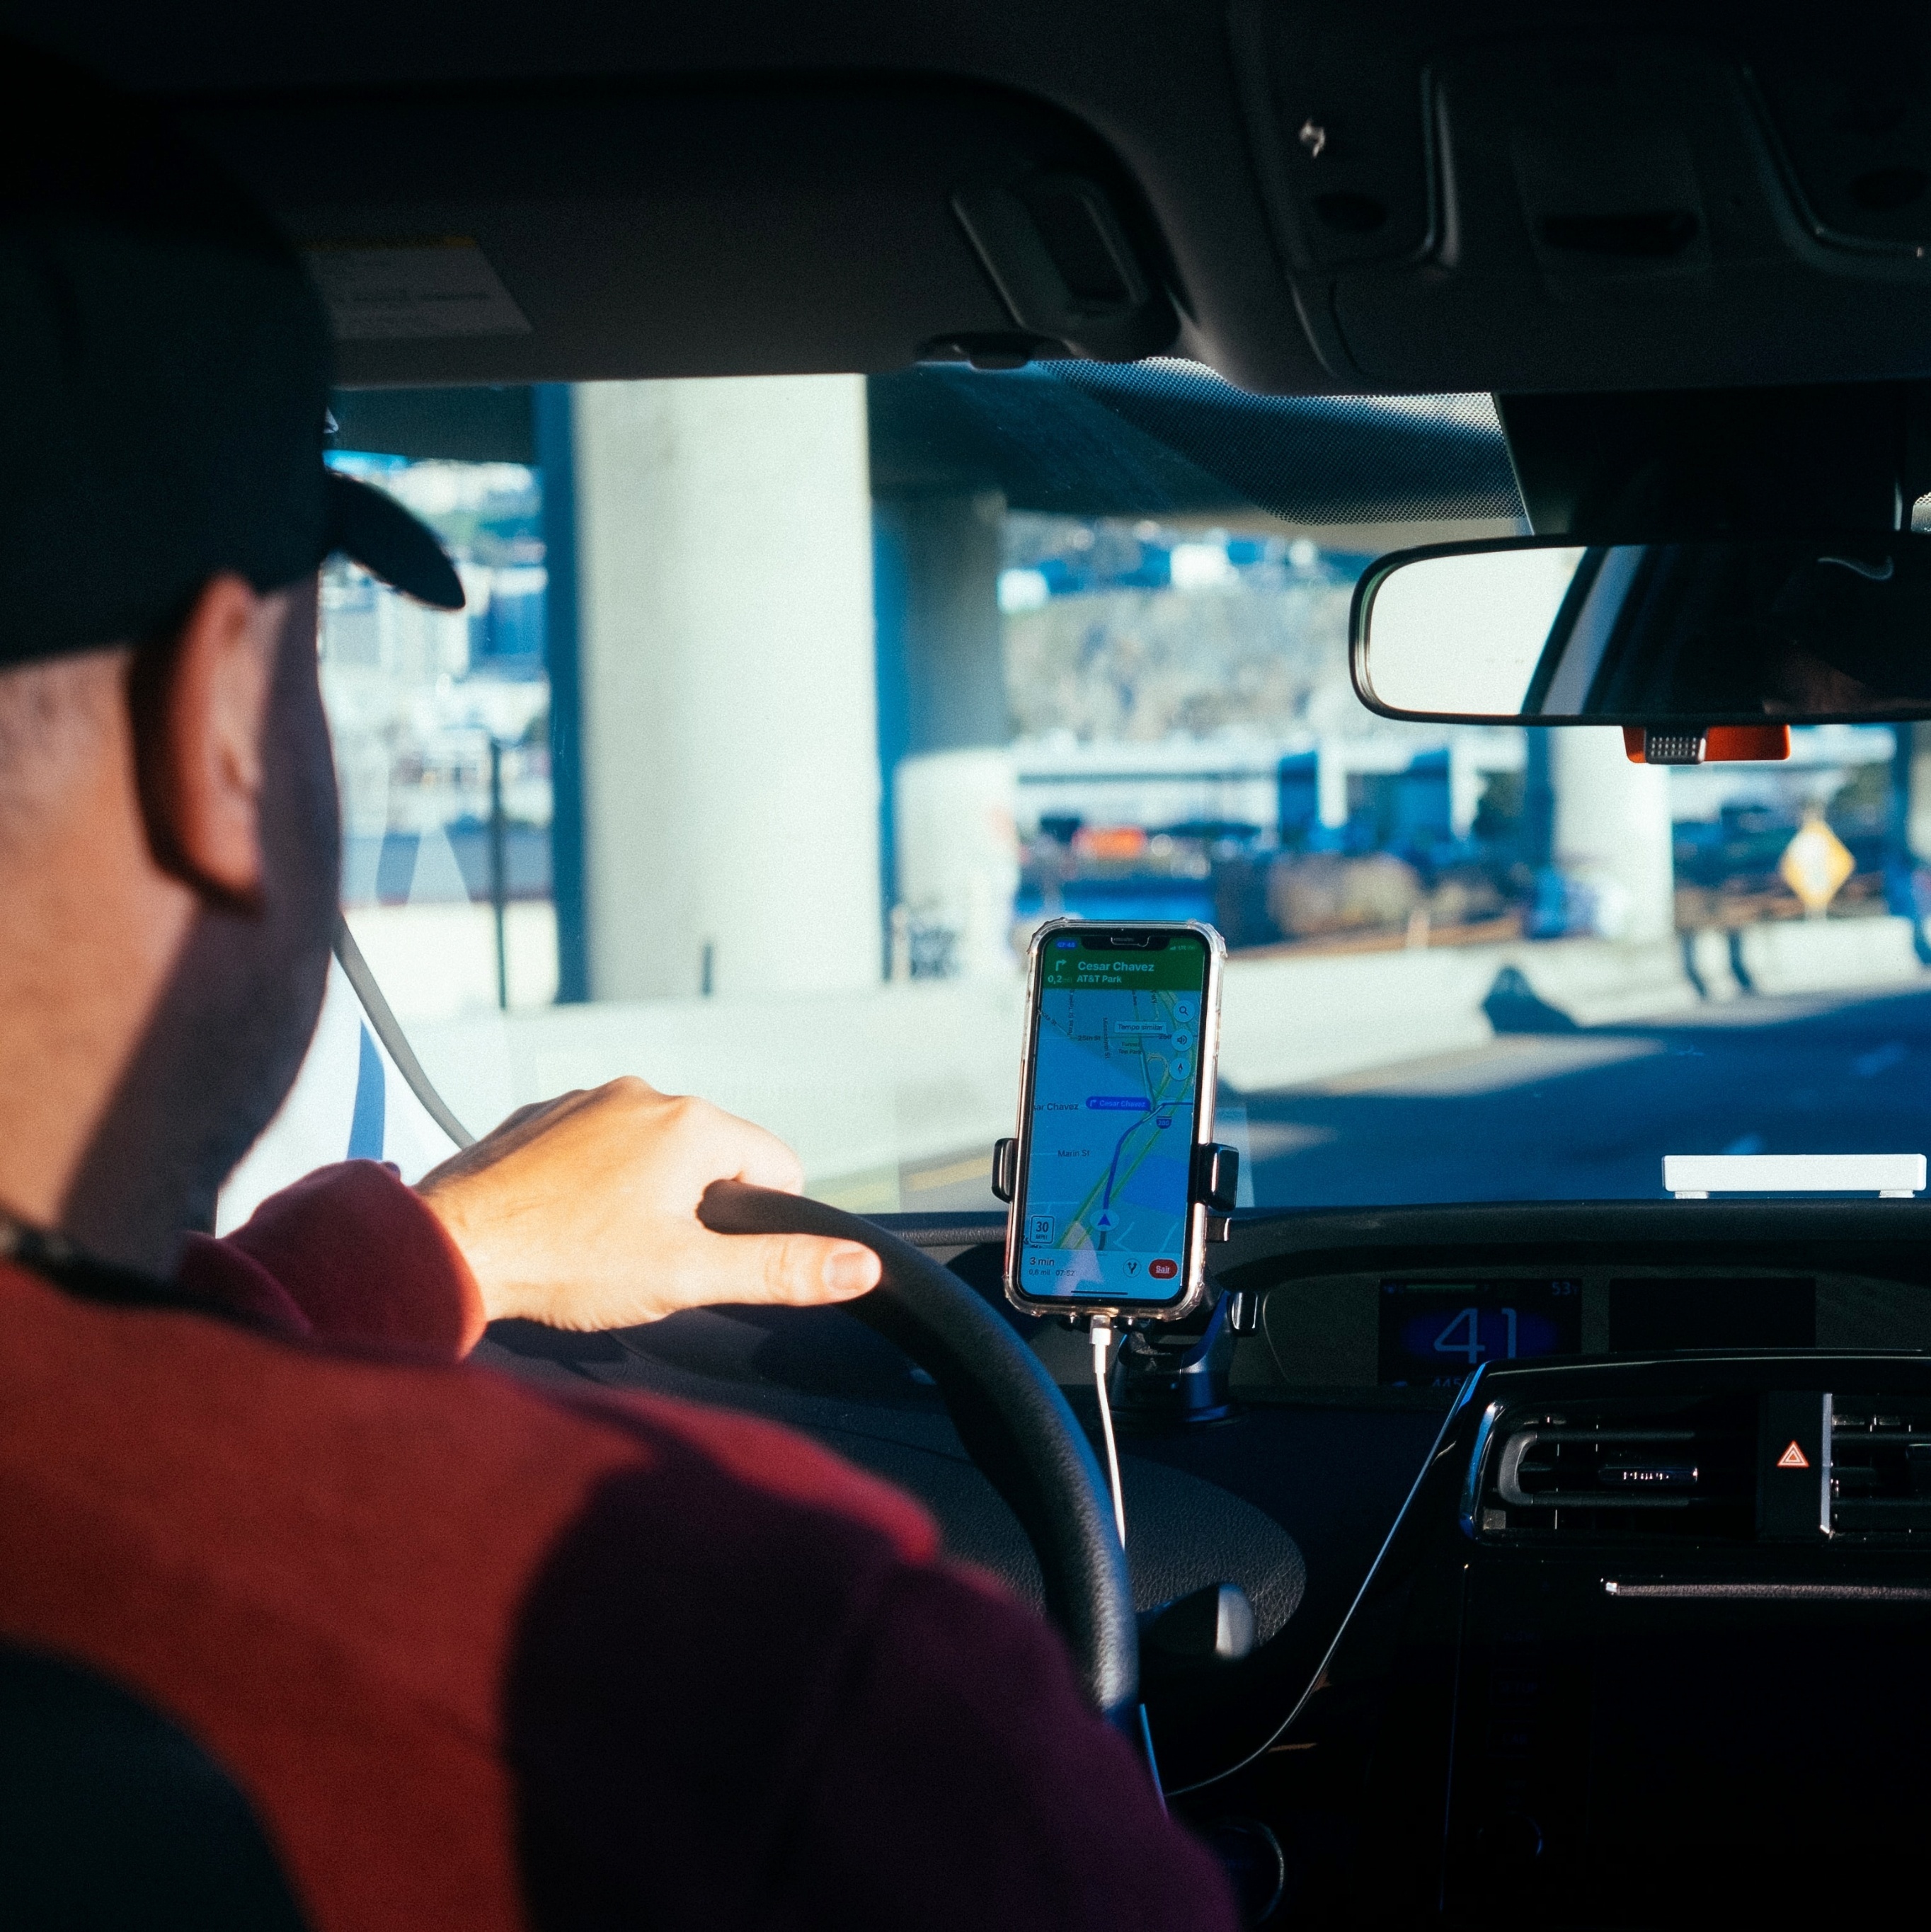 App concorrente da Uber oferece corridas em carros blindados